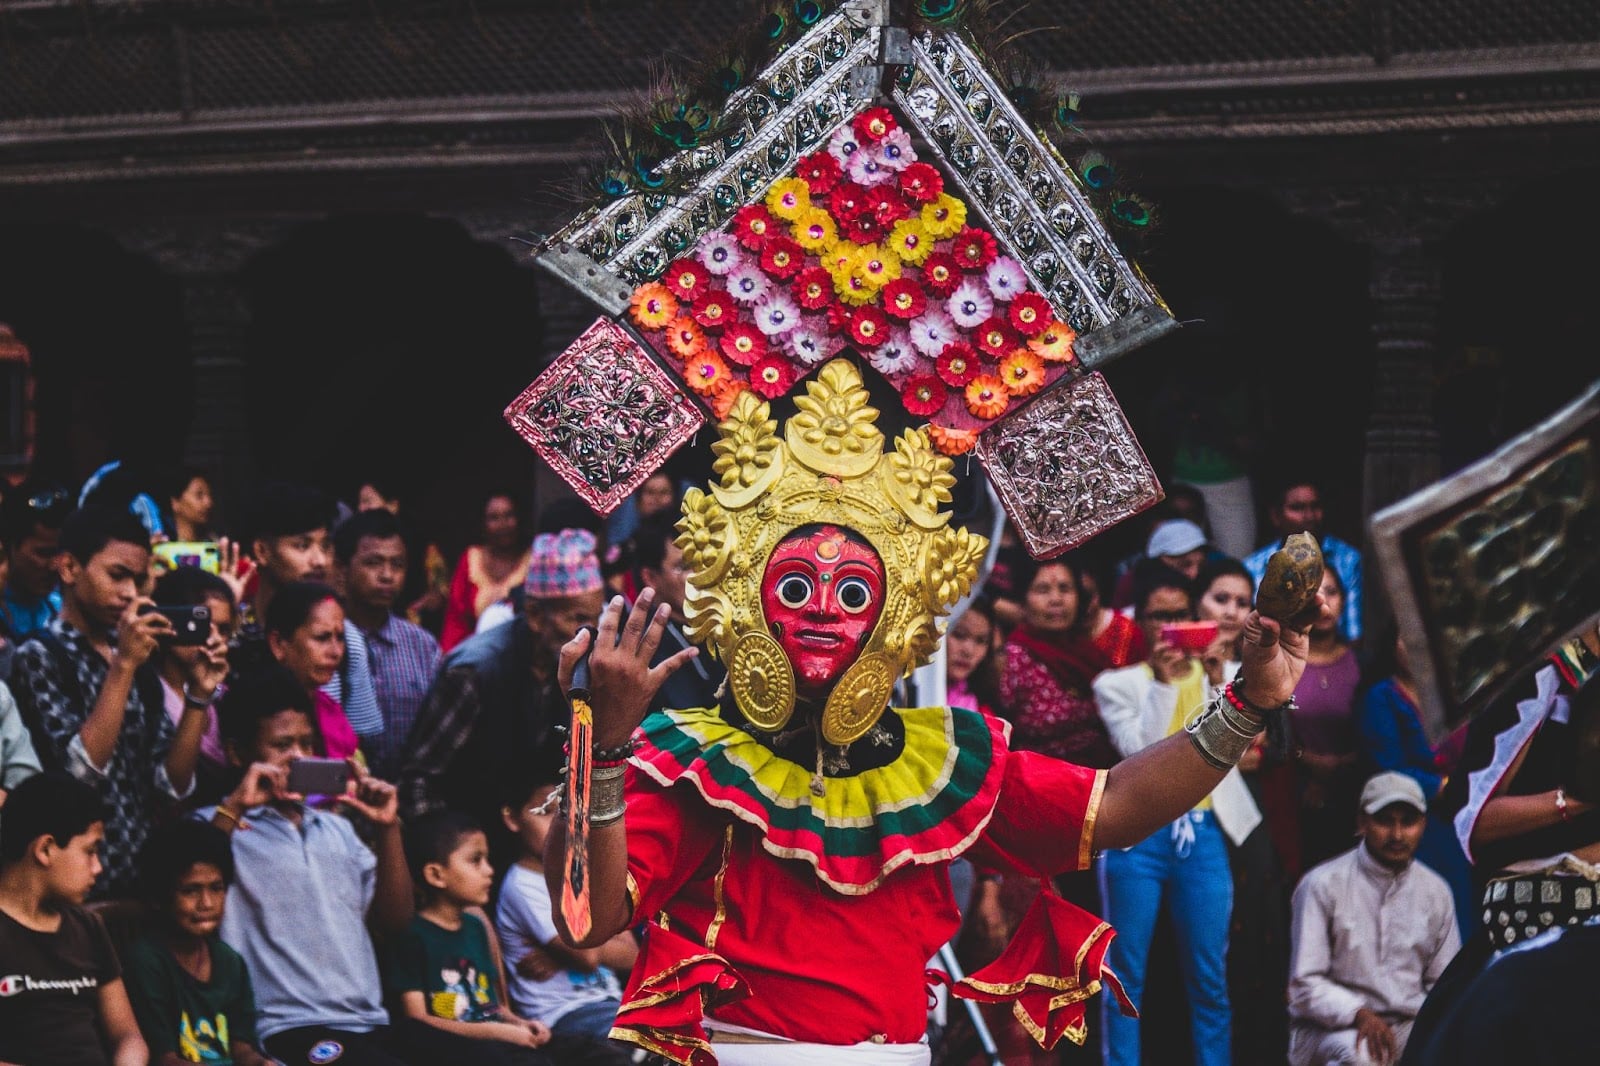 Cultura in Nepal: festeggiamenti, maschera facciale.